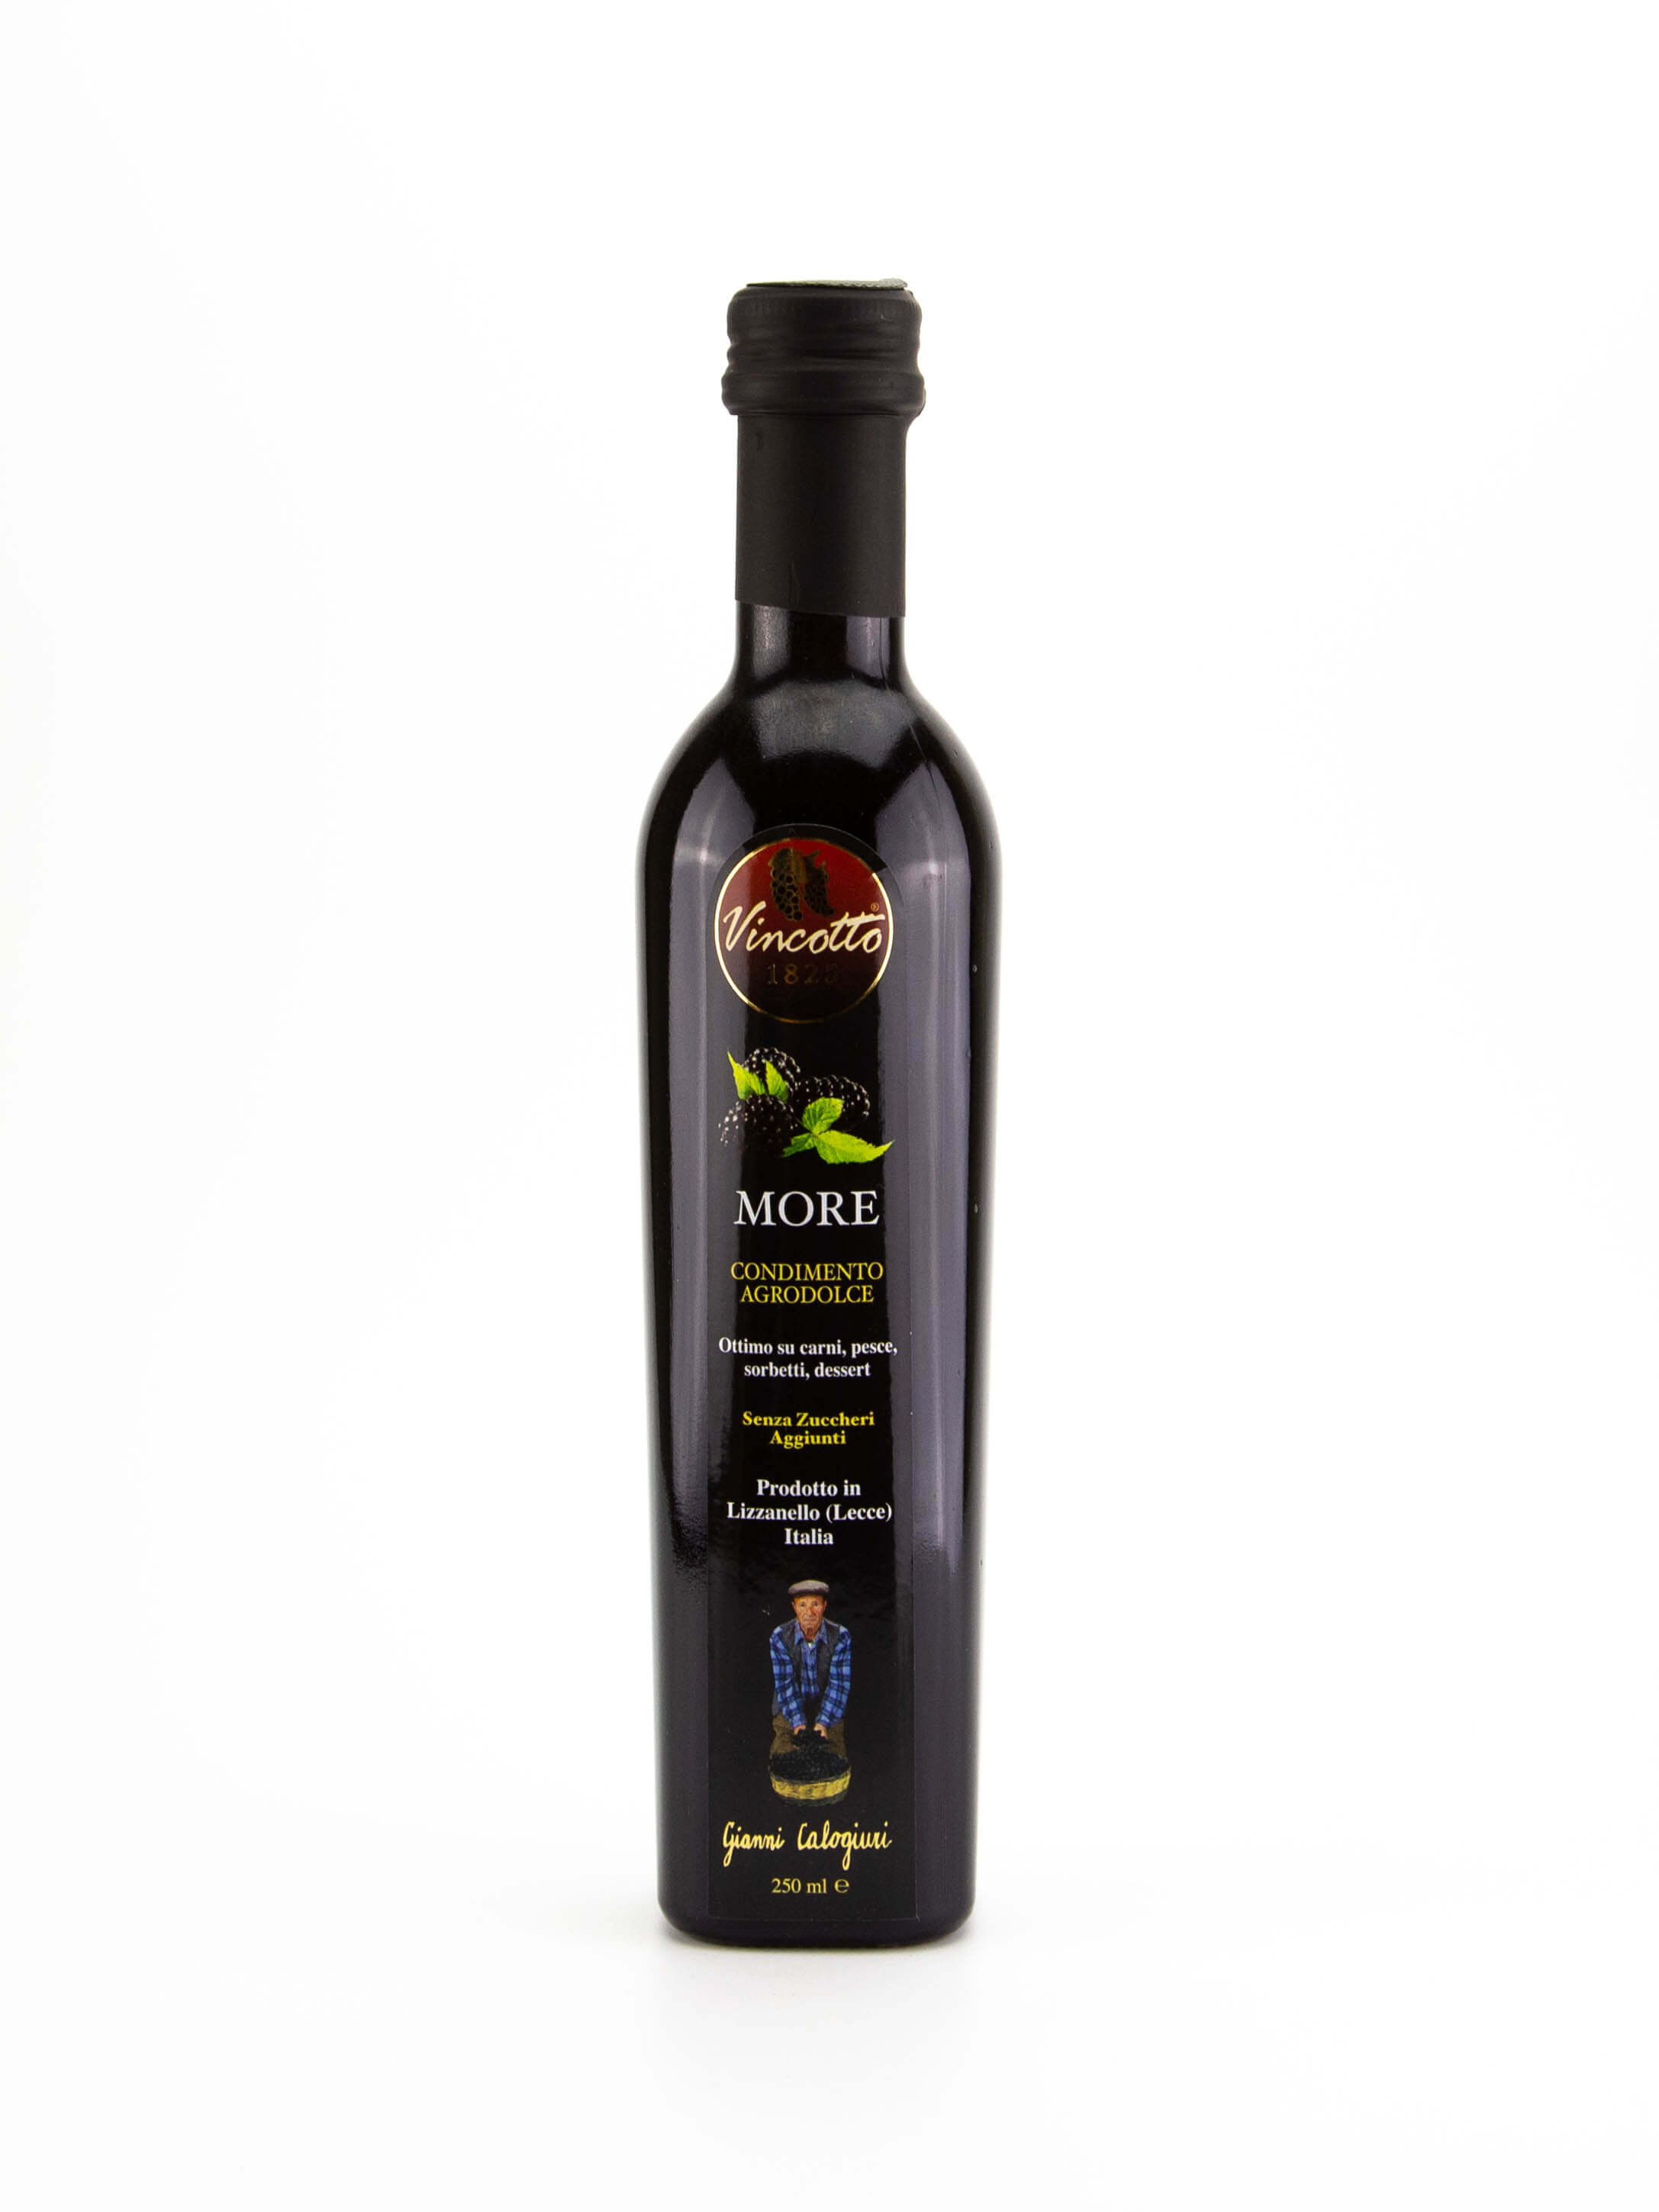 Vincotto con moras (zarzamoras) botella de 250 ml.